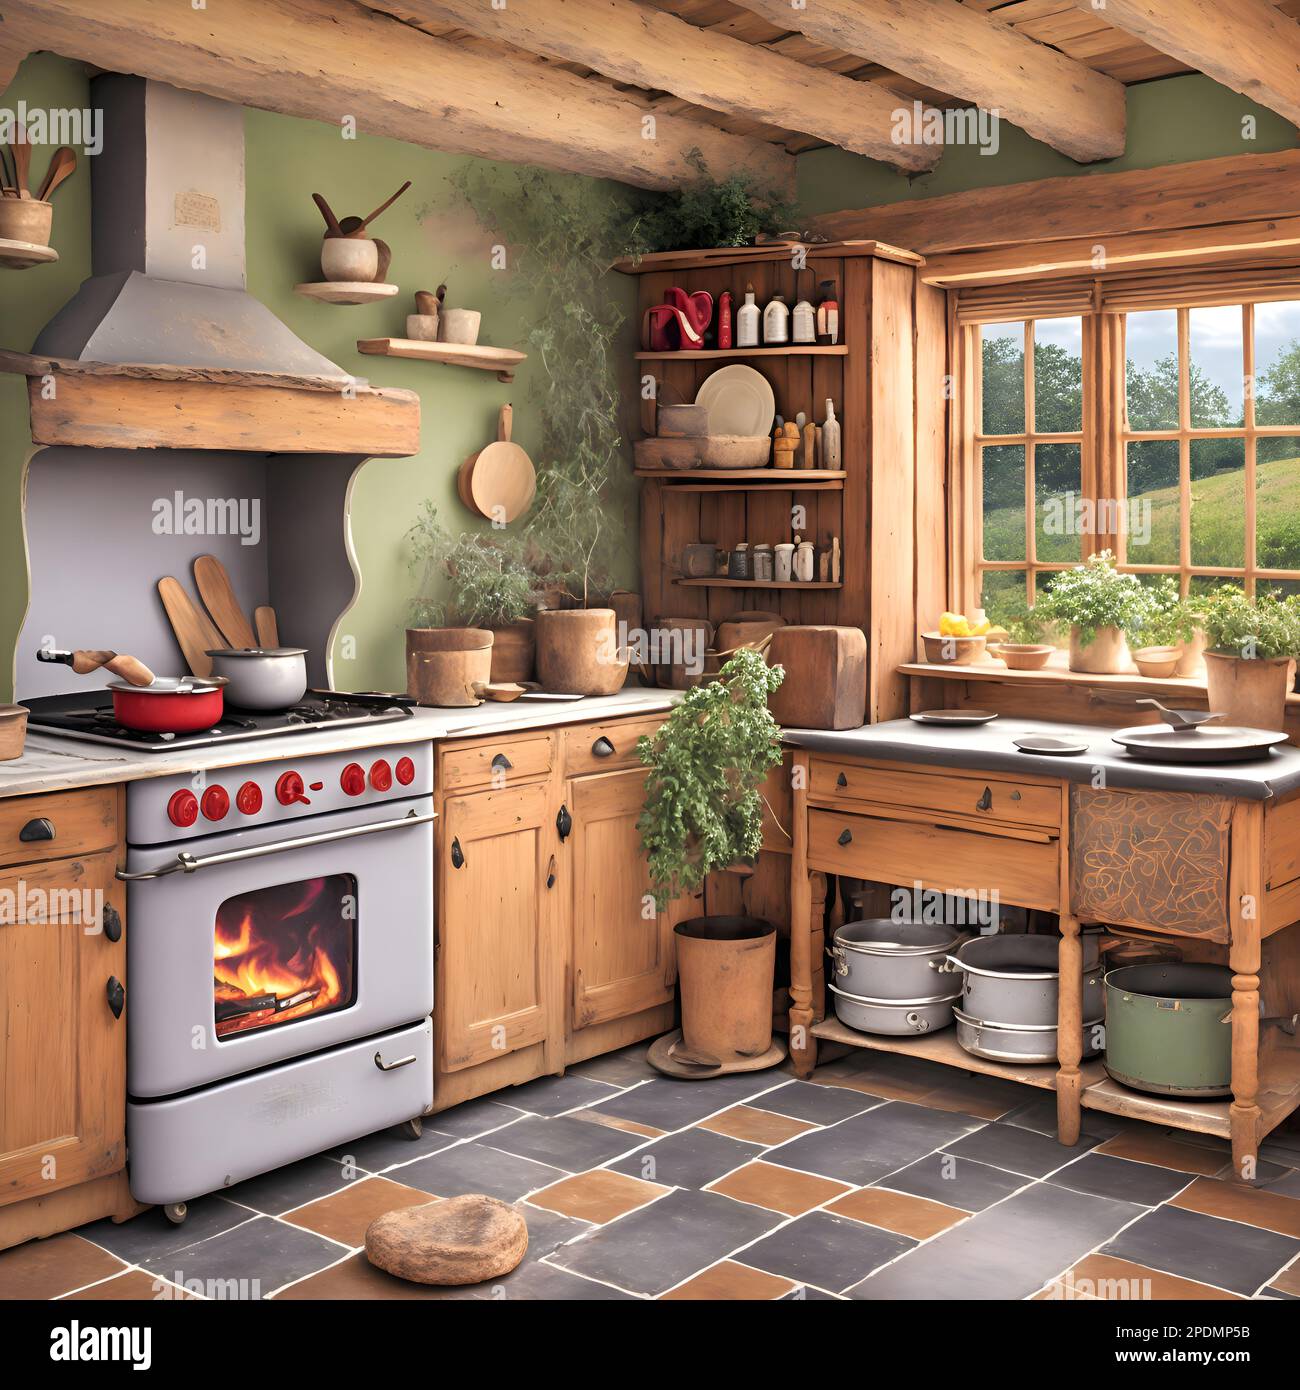 la inteligencia artificial generó la imagen pictórica de una cocina de  ensueño en una cabaña que muestra un horno viejo o estufa con una pila de  leña, una olla en la estufa